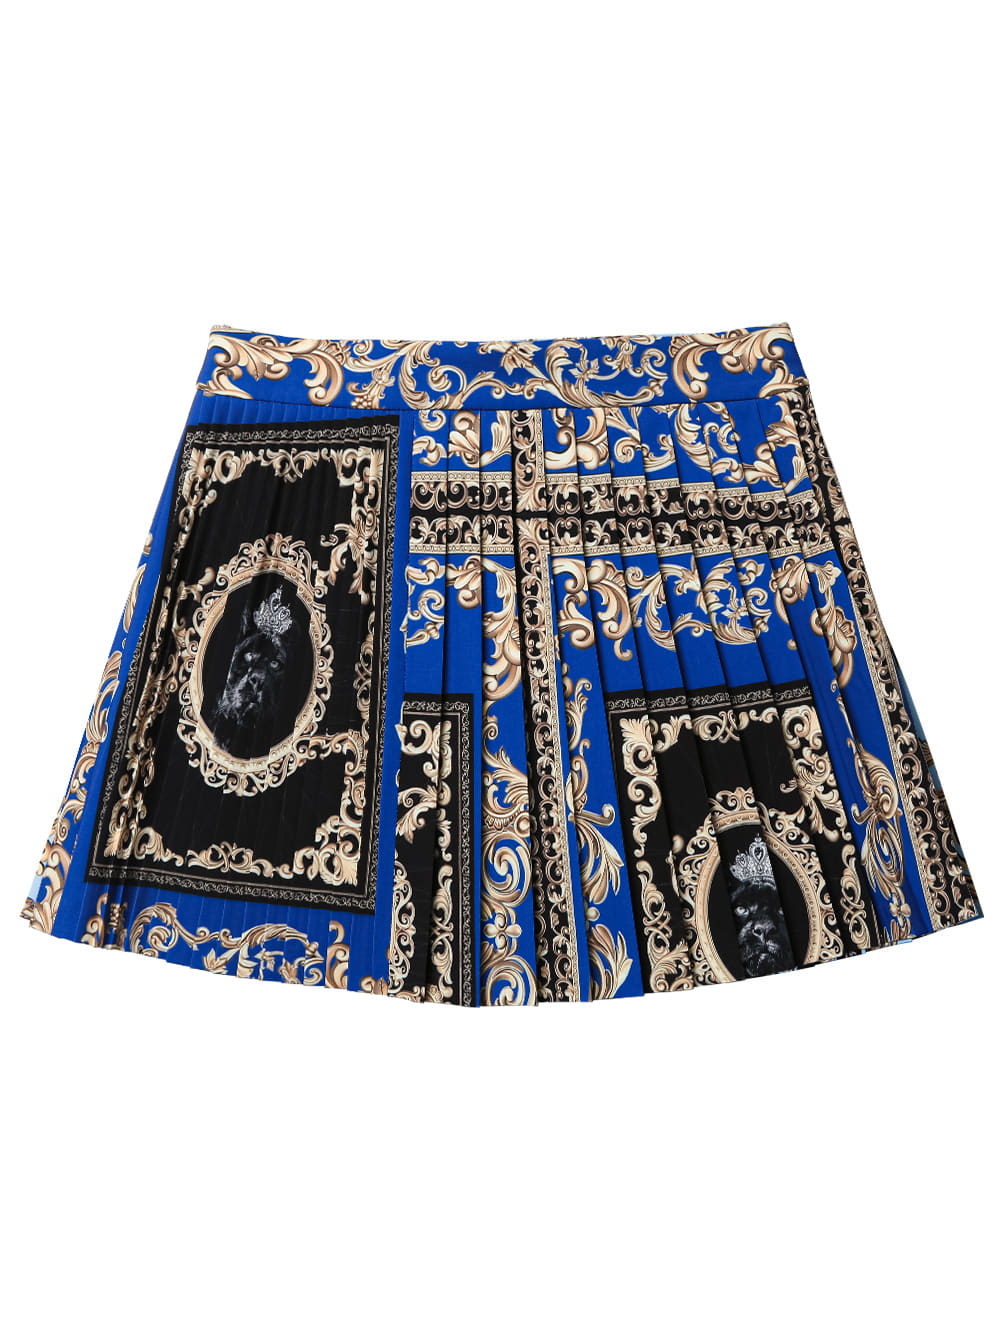 UTAA Buckingham Short Skirt : Royal Blue  (UB2SKF231BL)